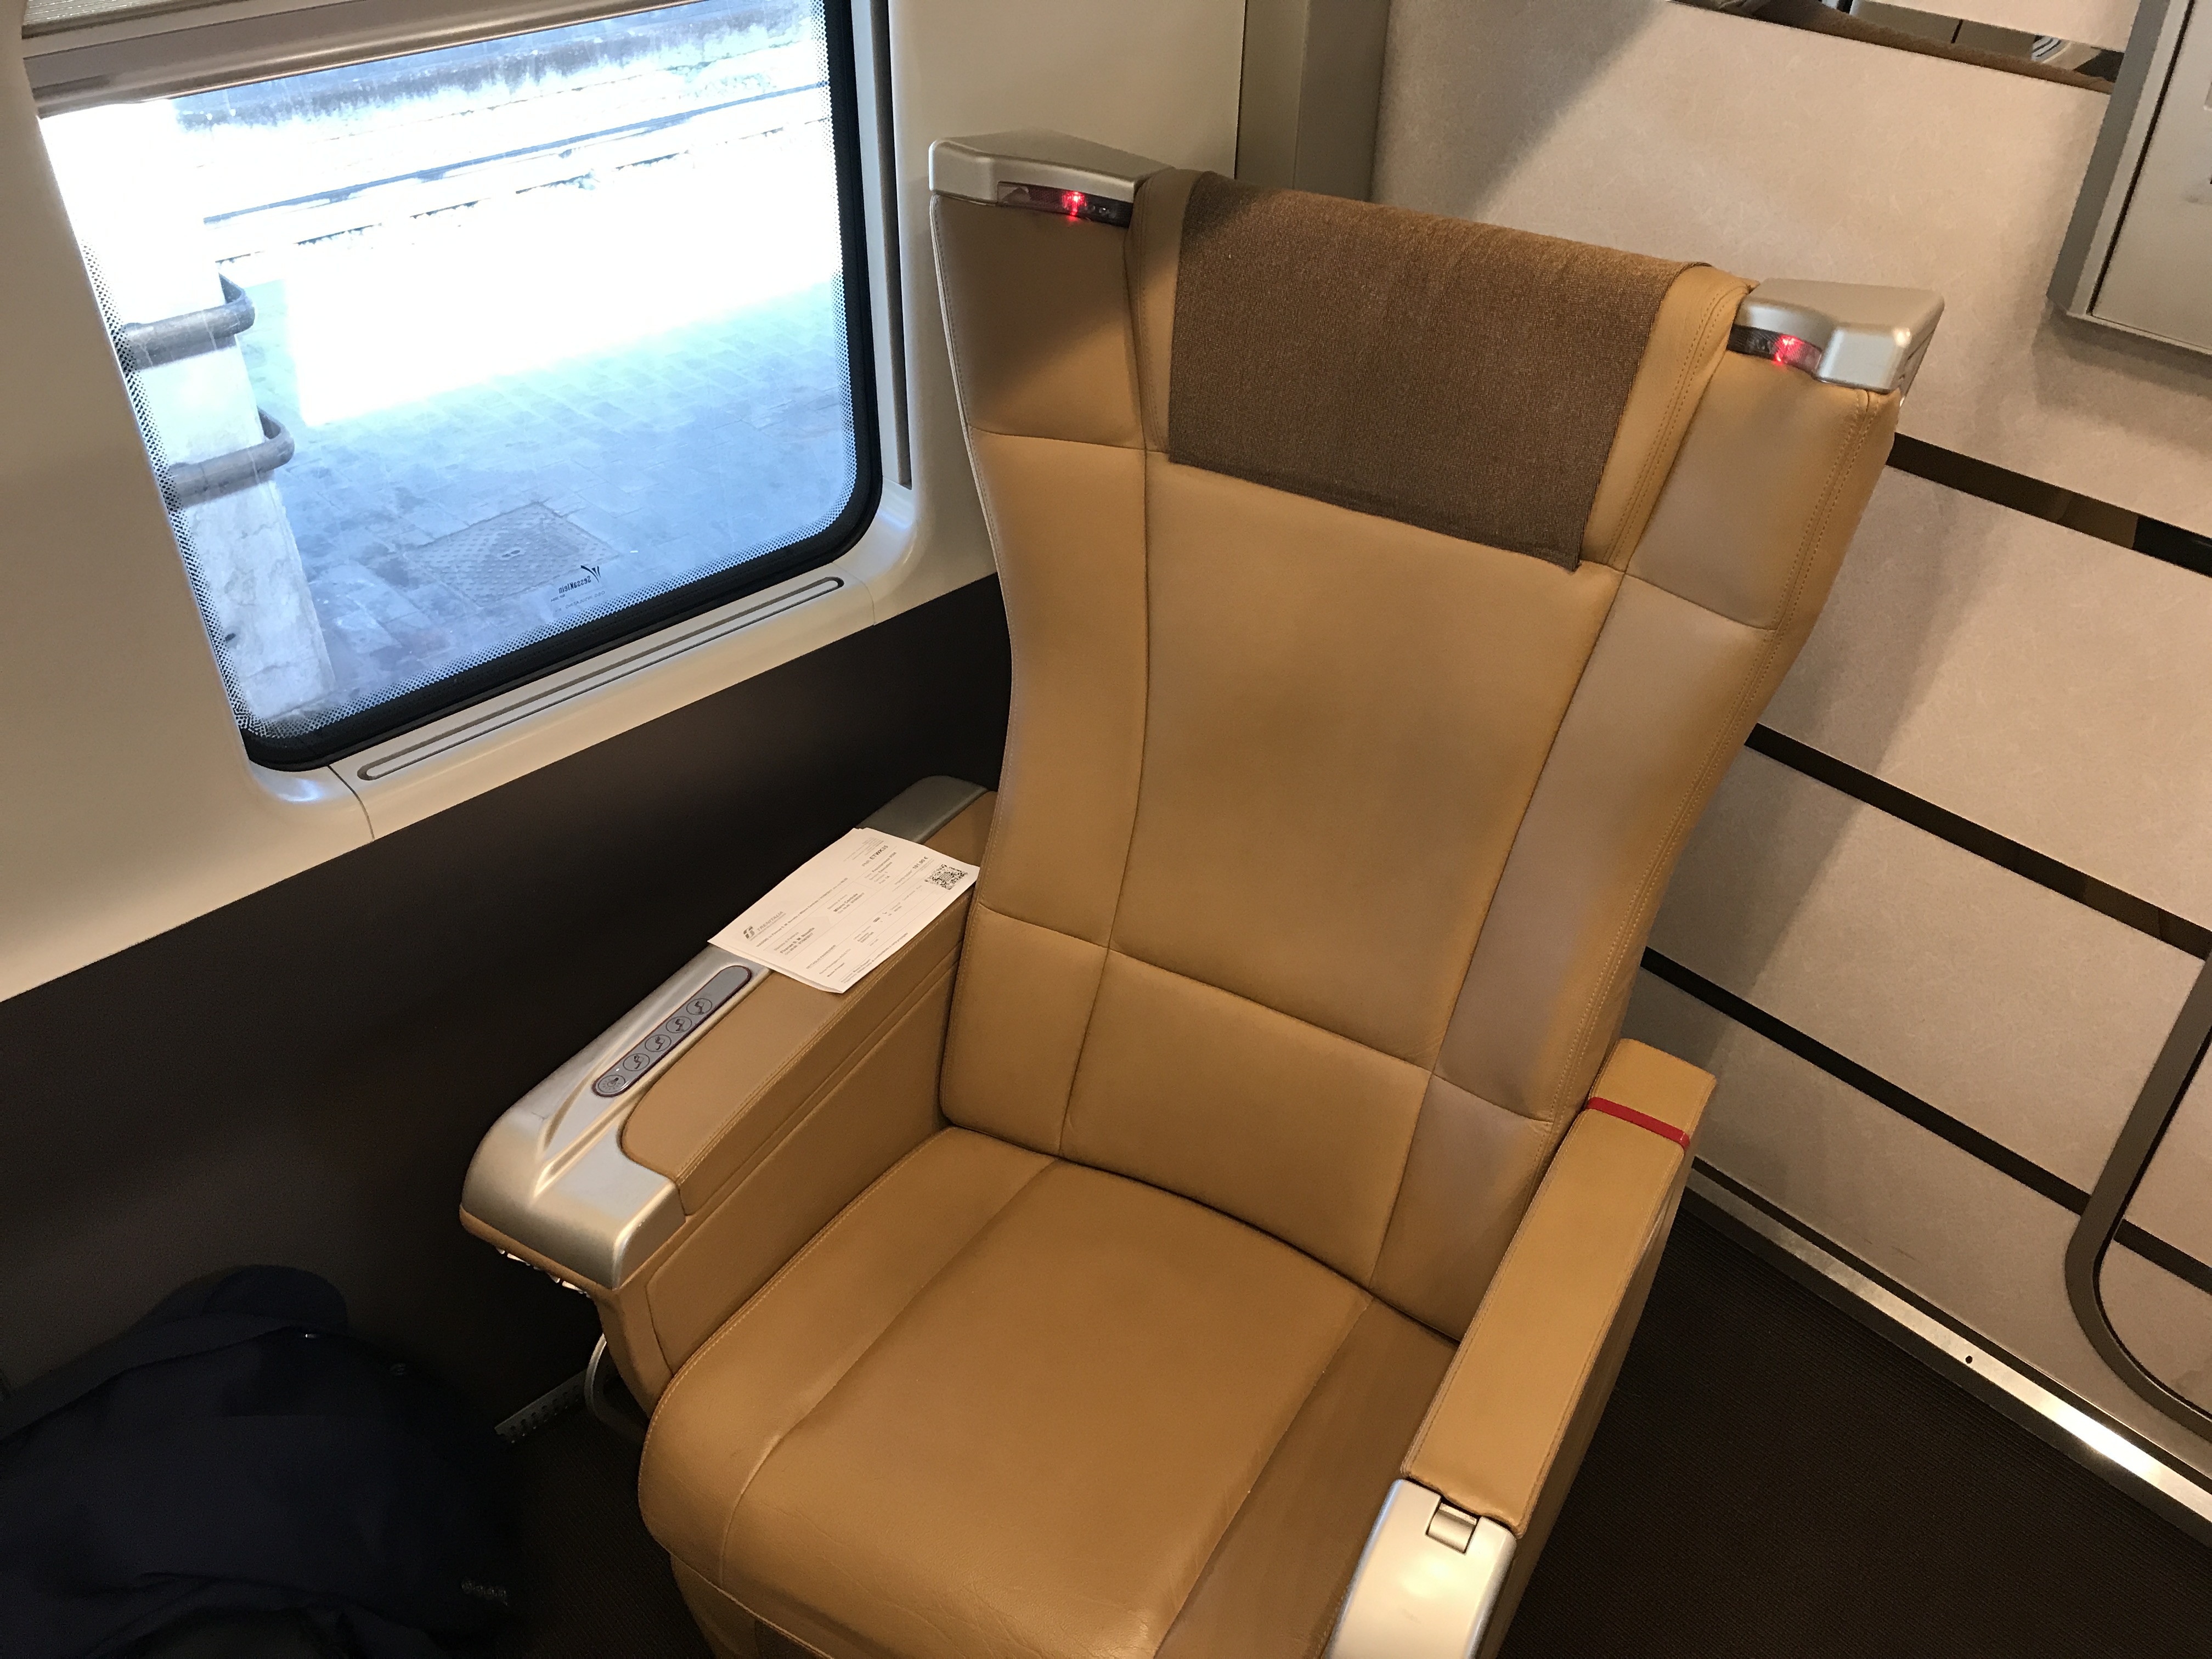 a chair in a train